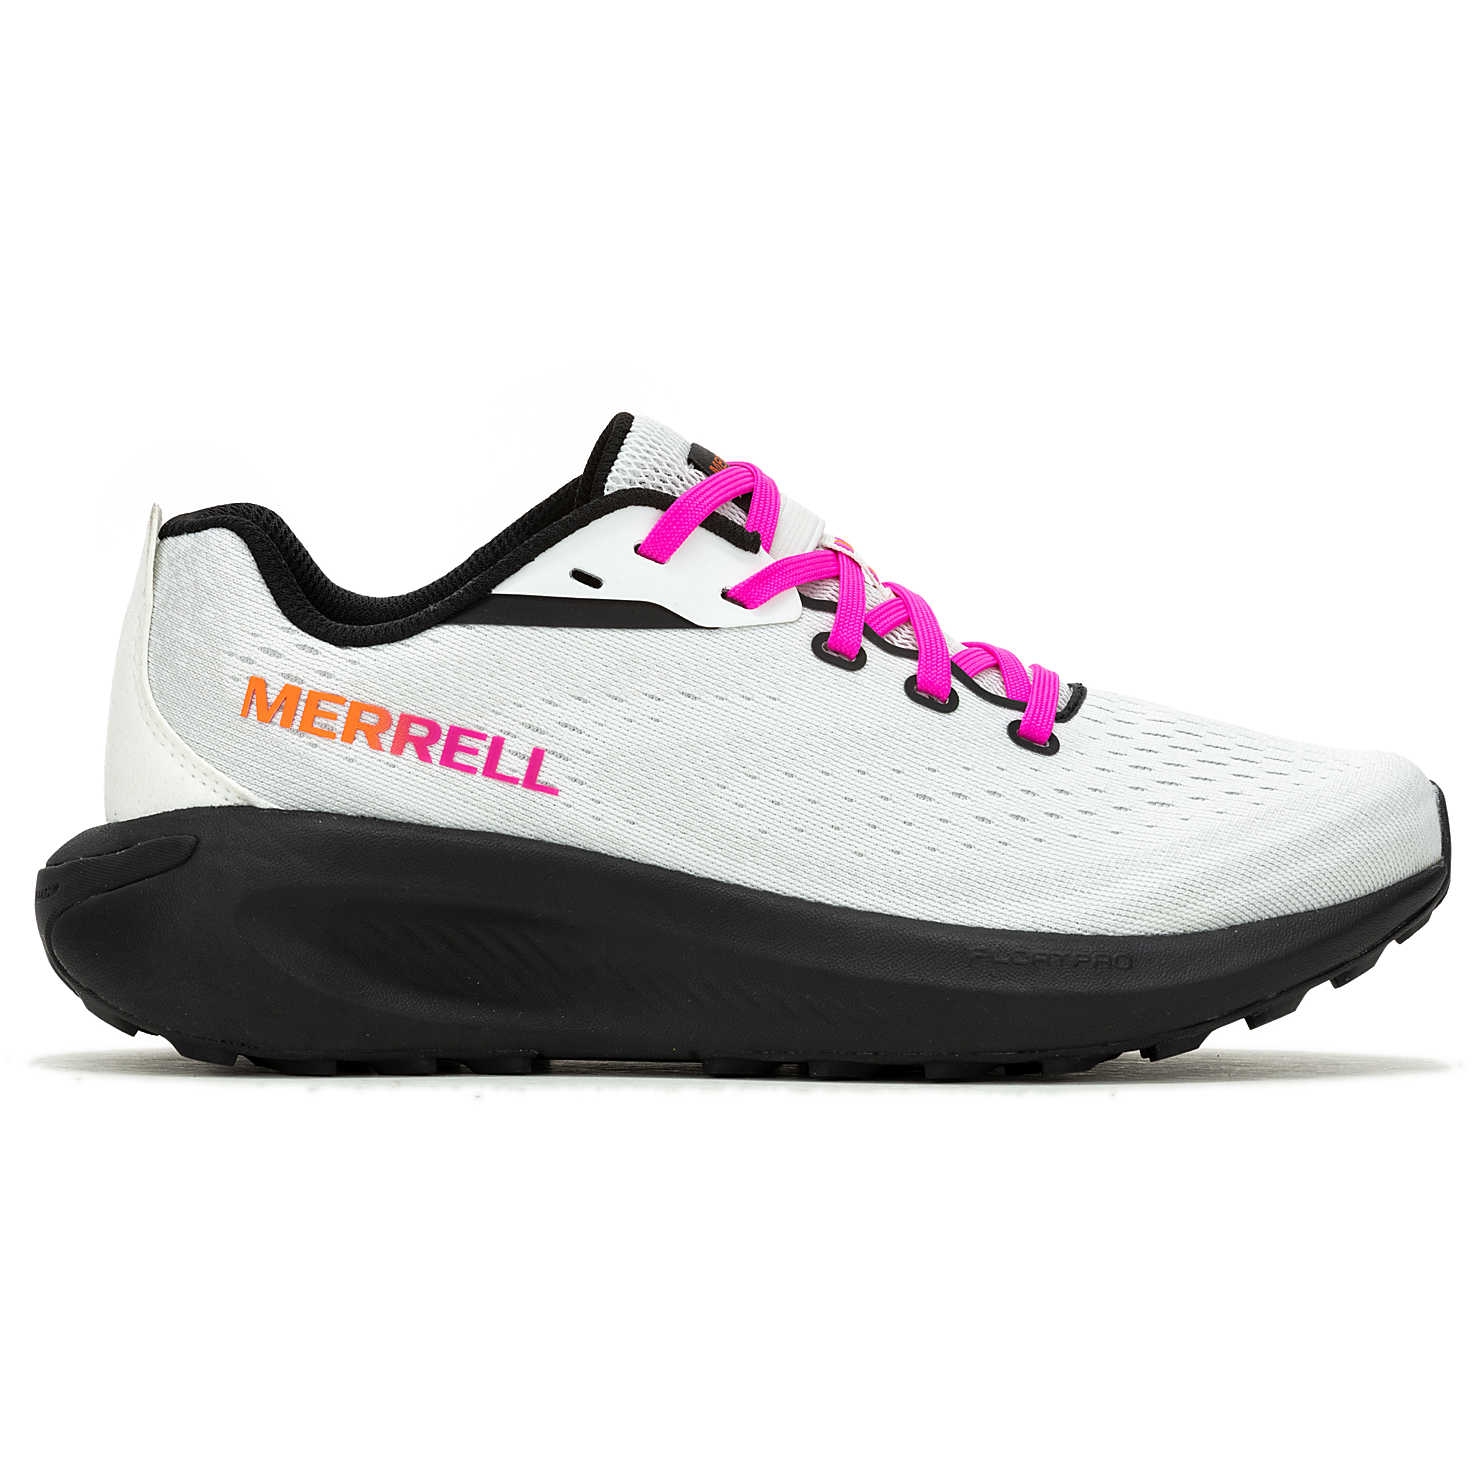 Produktbild von Merrell Morphlite Laufschuhe Damen - weiß/multi